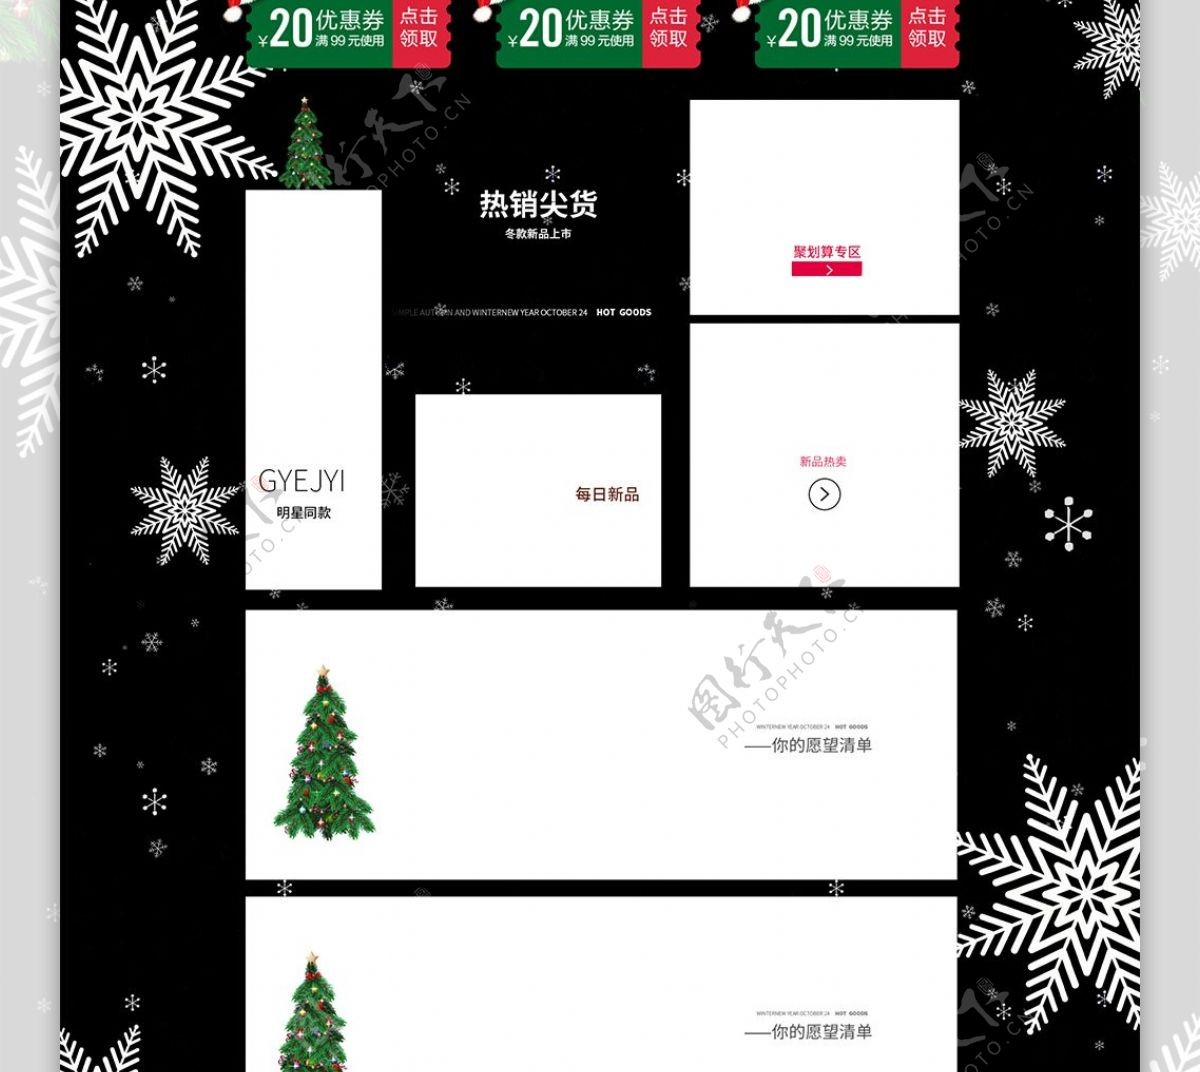 电商天猫圣诞嘉年华黑色礼盒圣诞树服装首页